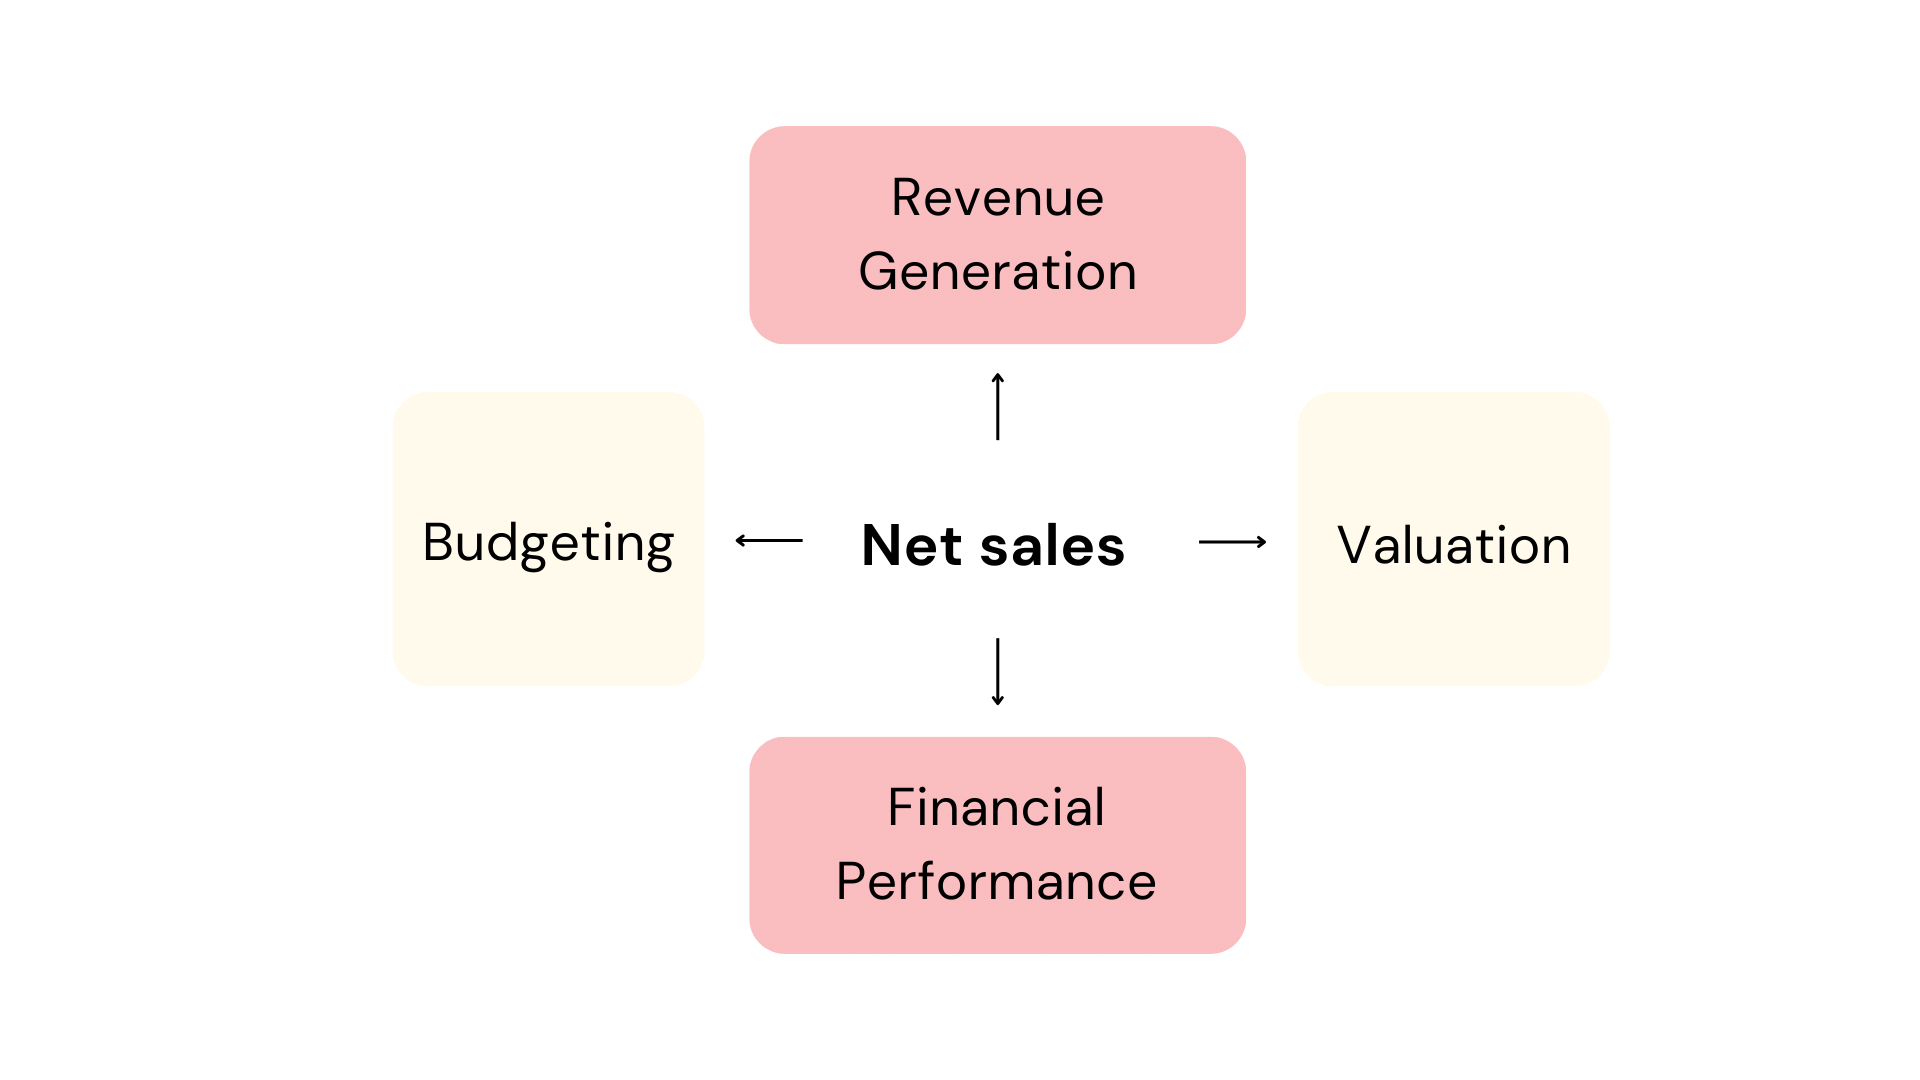 Net sales